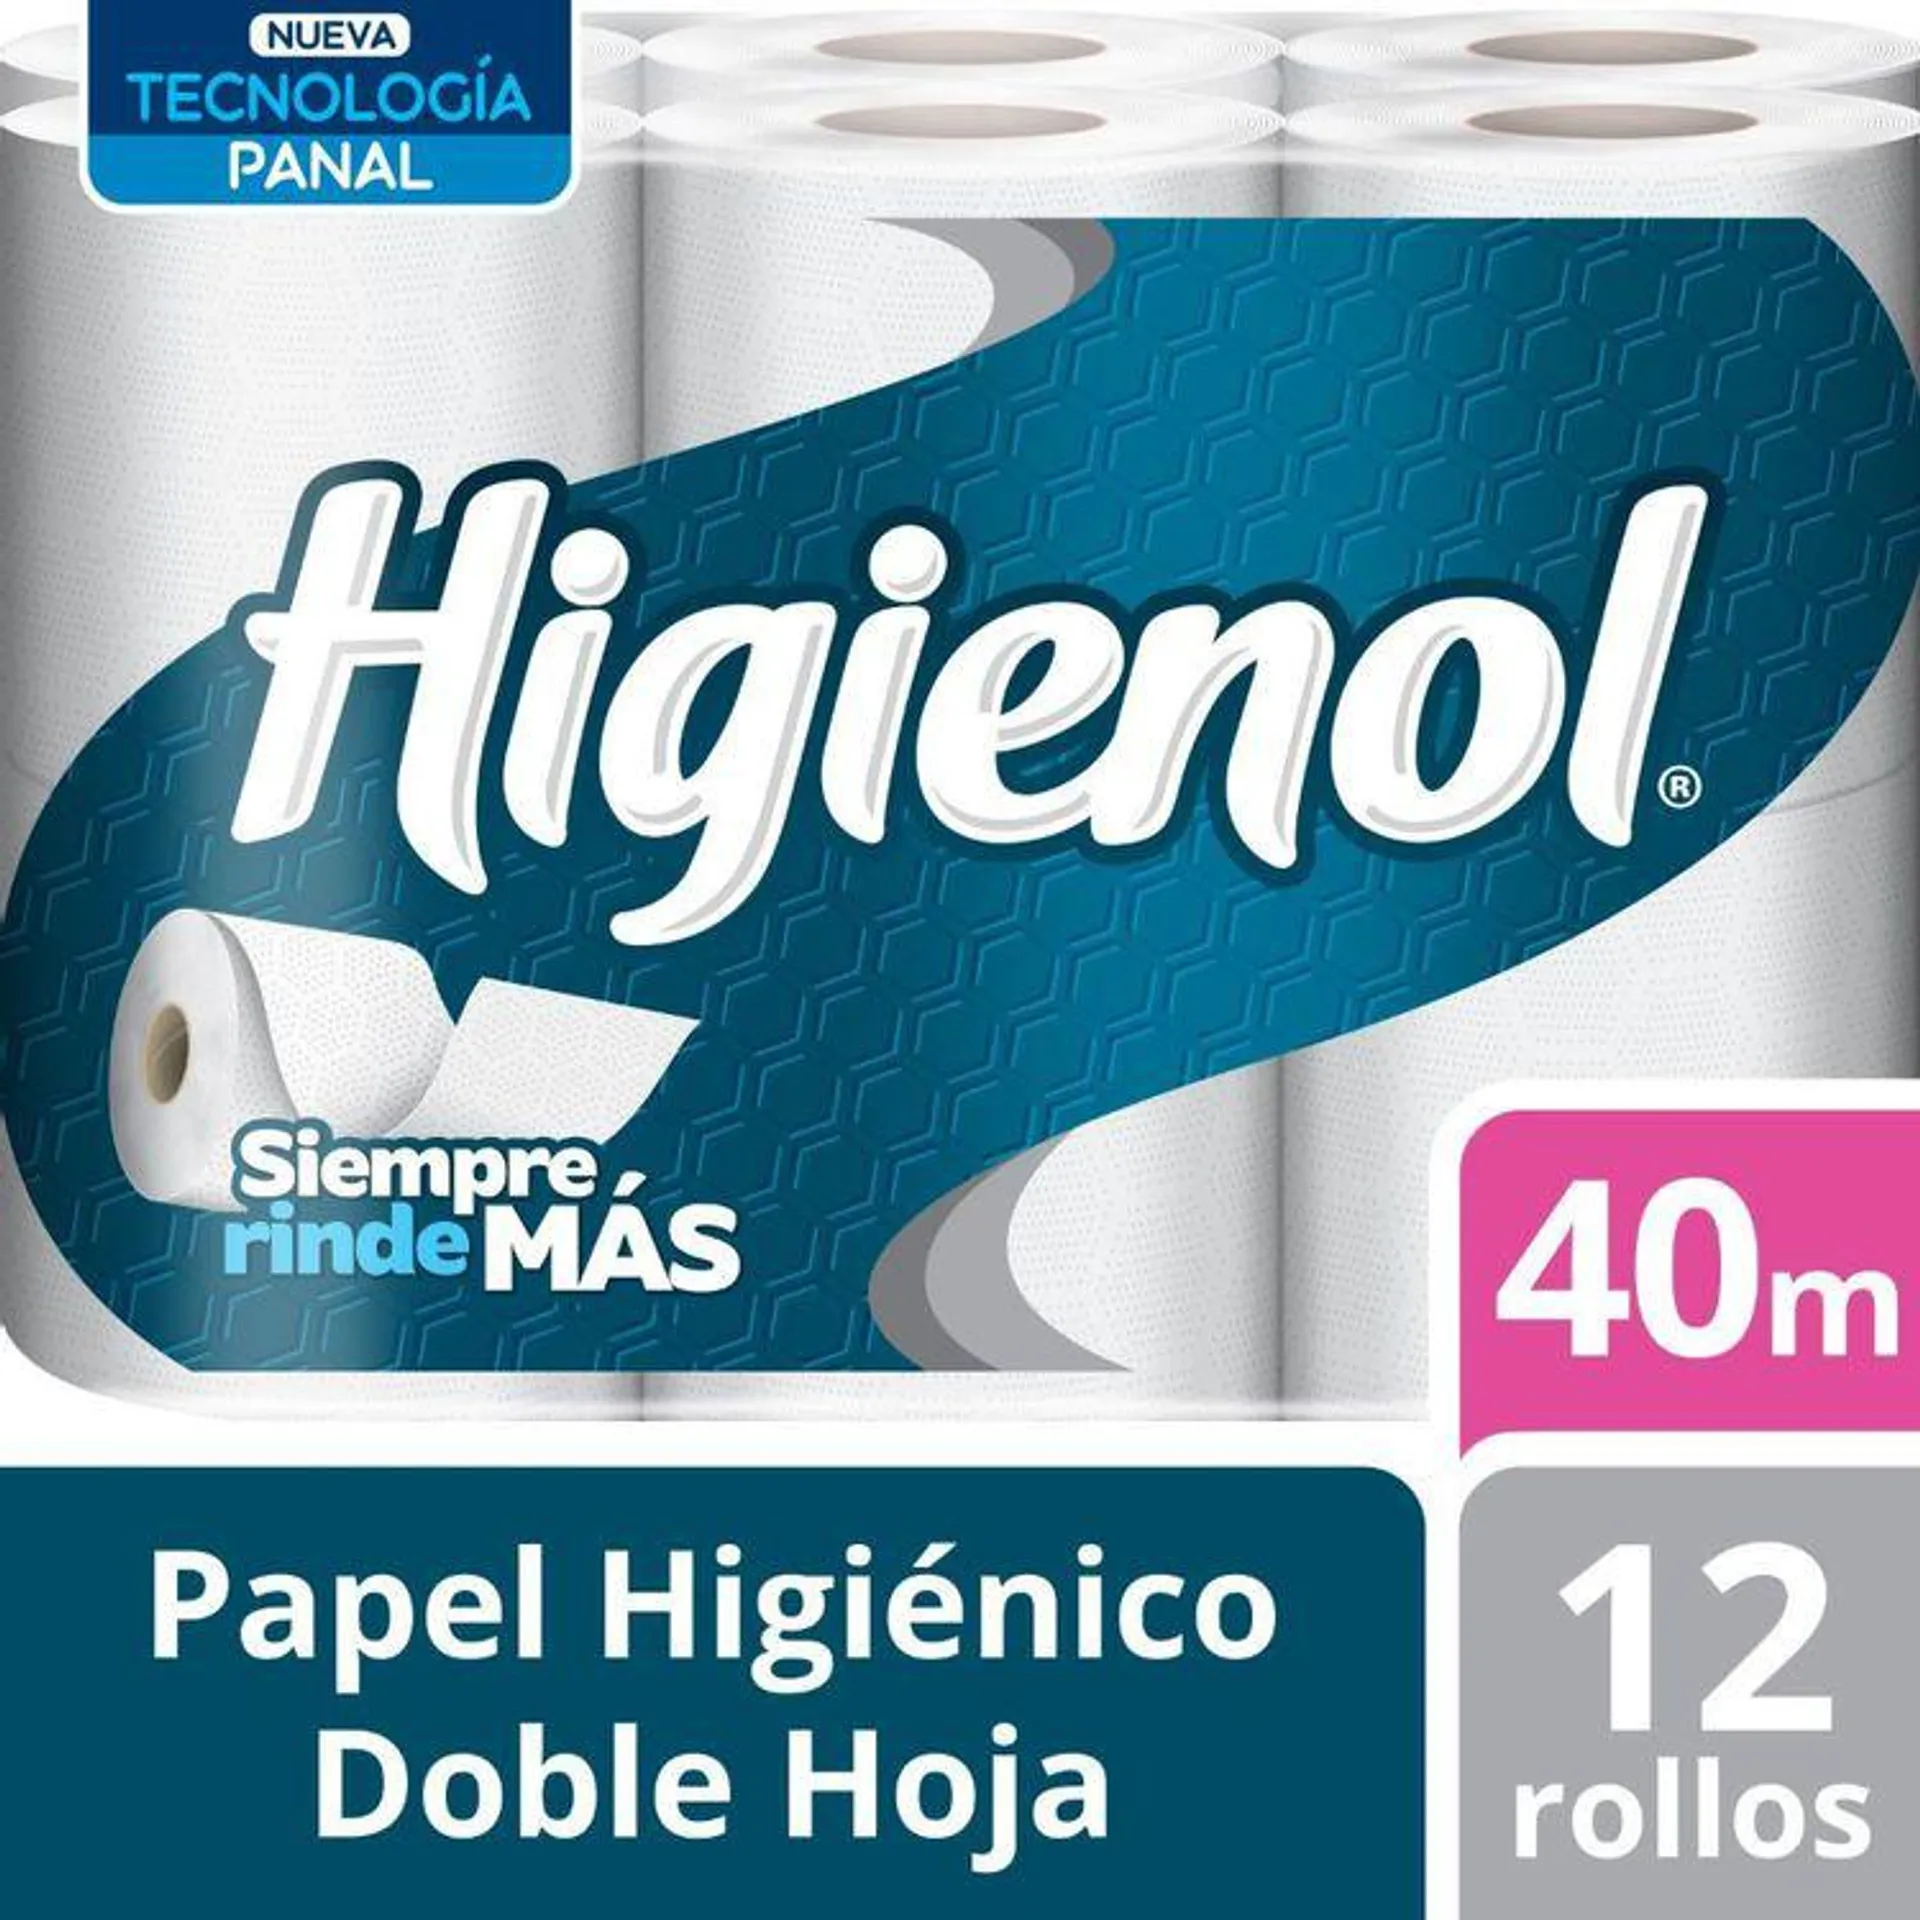 Papel Higiénico Doble Hoja Higienol 12un.